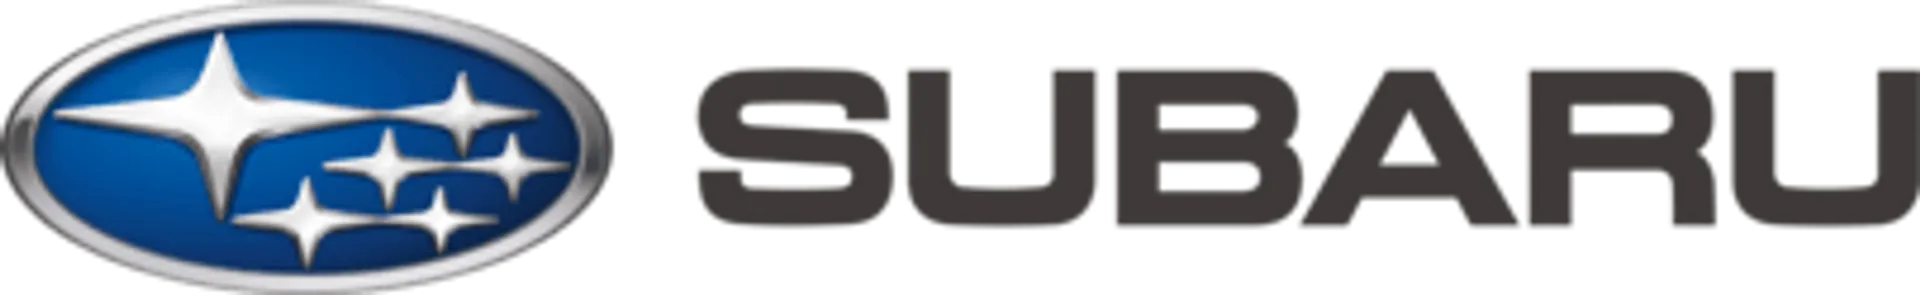 SUBARU logo. Current weekly ad